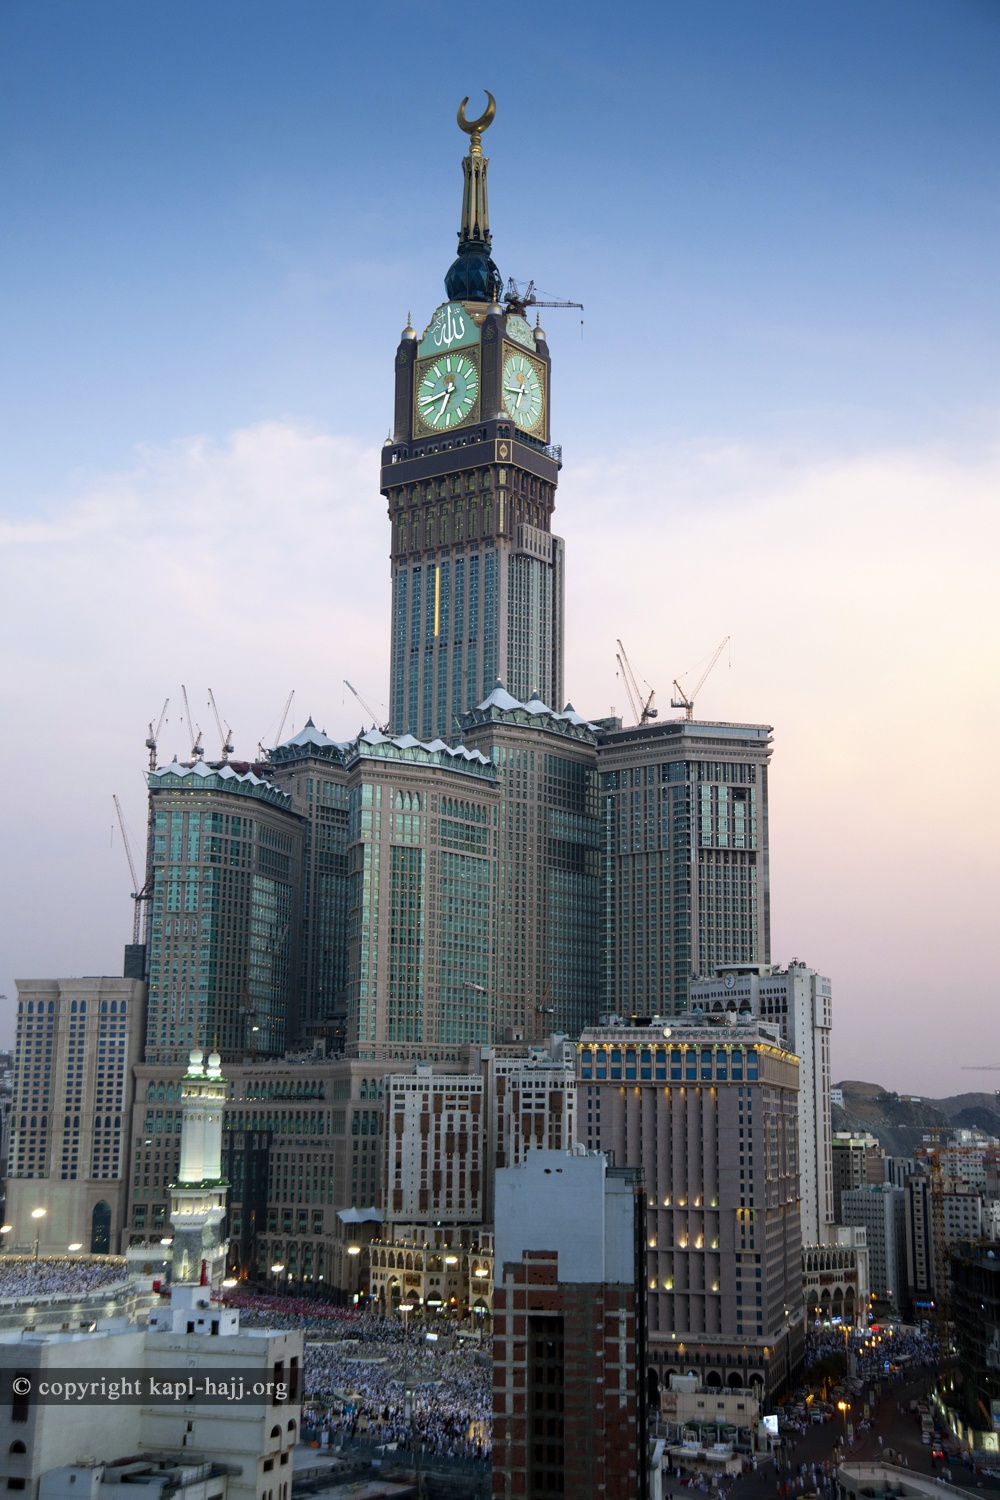 Самый большой часов в мире. Башня Абрадж Аль-Бейт. Часовая башня Абрадж Аль-Бейт. Часовой башне Абрадж Аль-Бейт в Мекке. Брадж Аль-Бейт, Мекка, Саудовская Аравия.